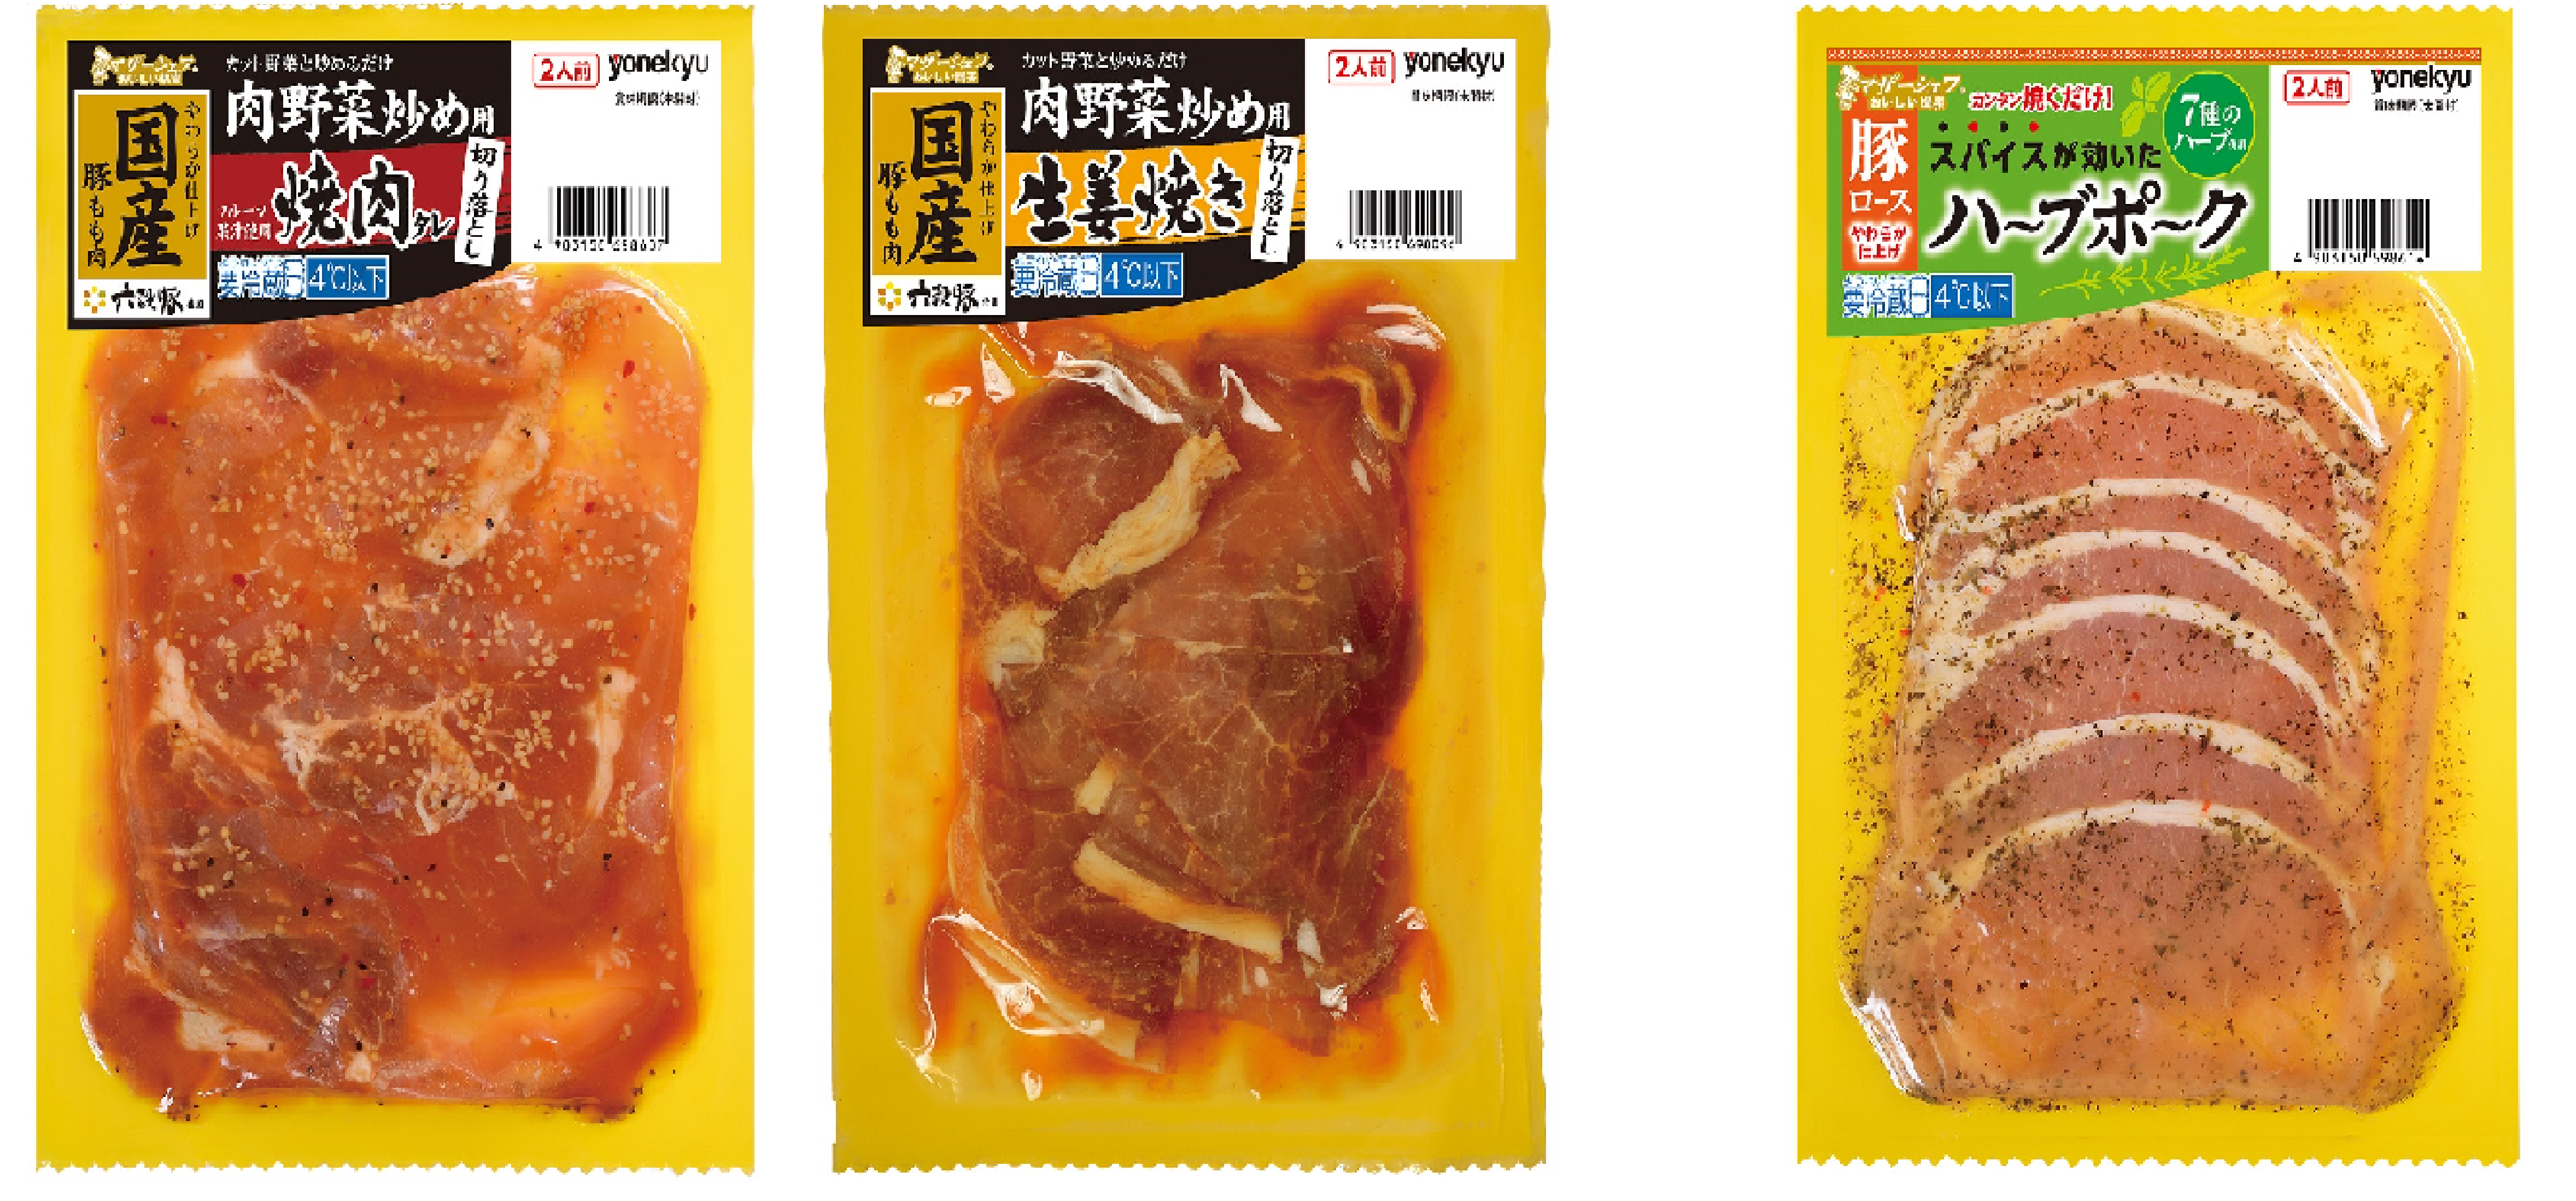 時短調理をサポートする便利な味付け肉。マザーシェフシリーズに新たな３品｜伊藤ハム米久HDのプレスリリース